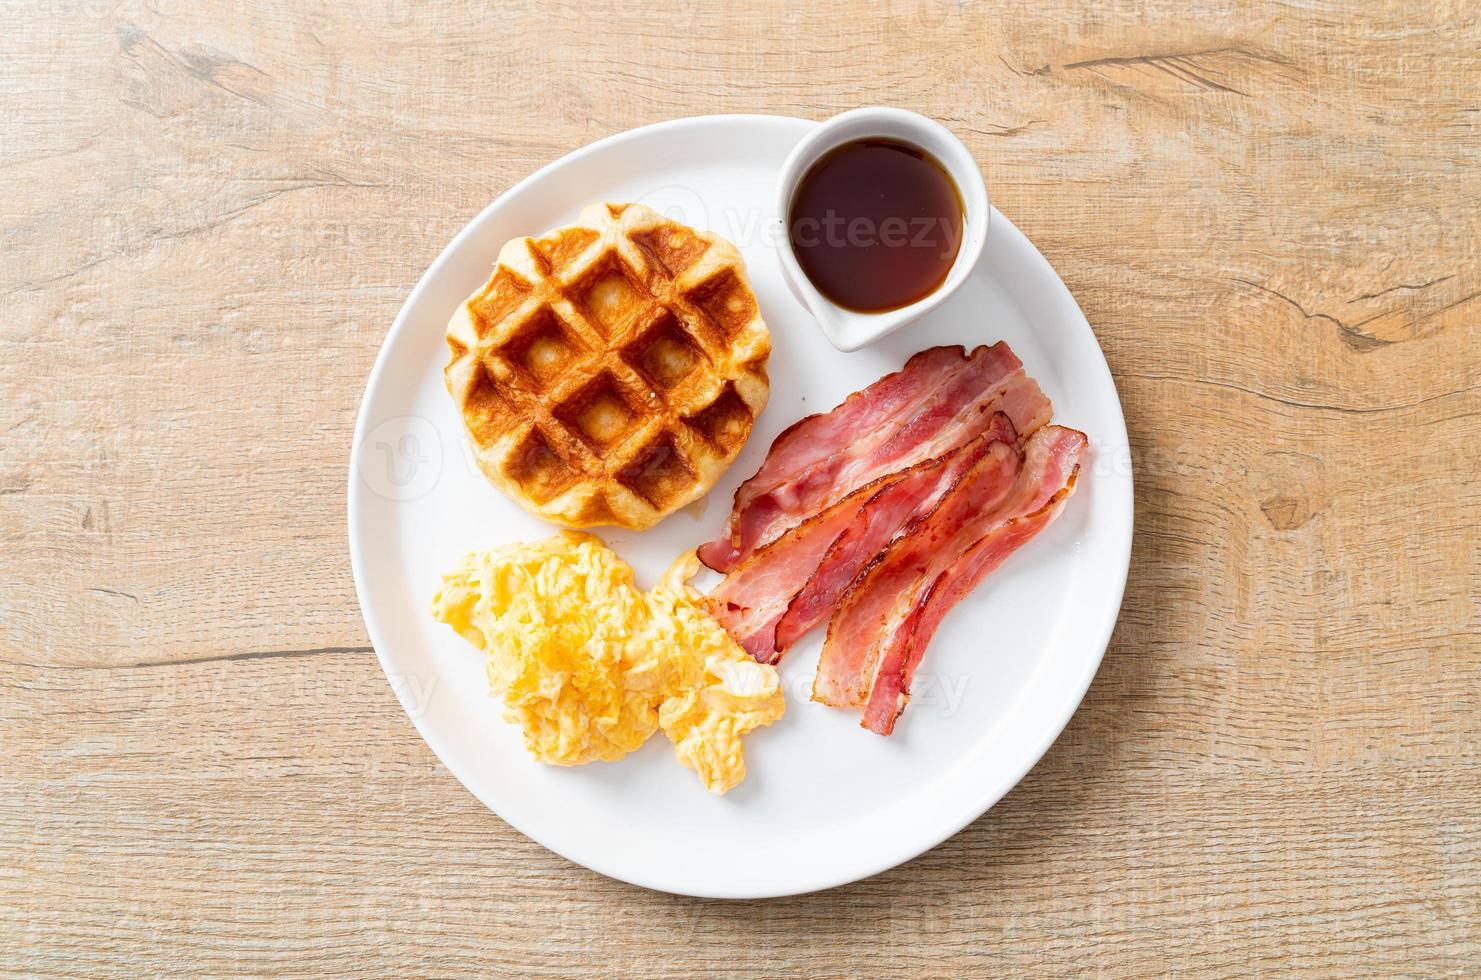 ovo mexido com bacon e waffle no café da manhã foto